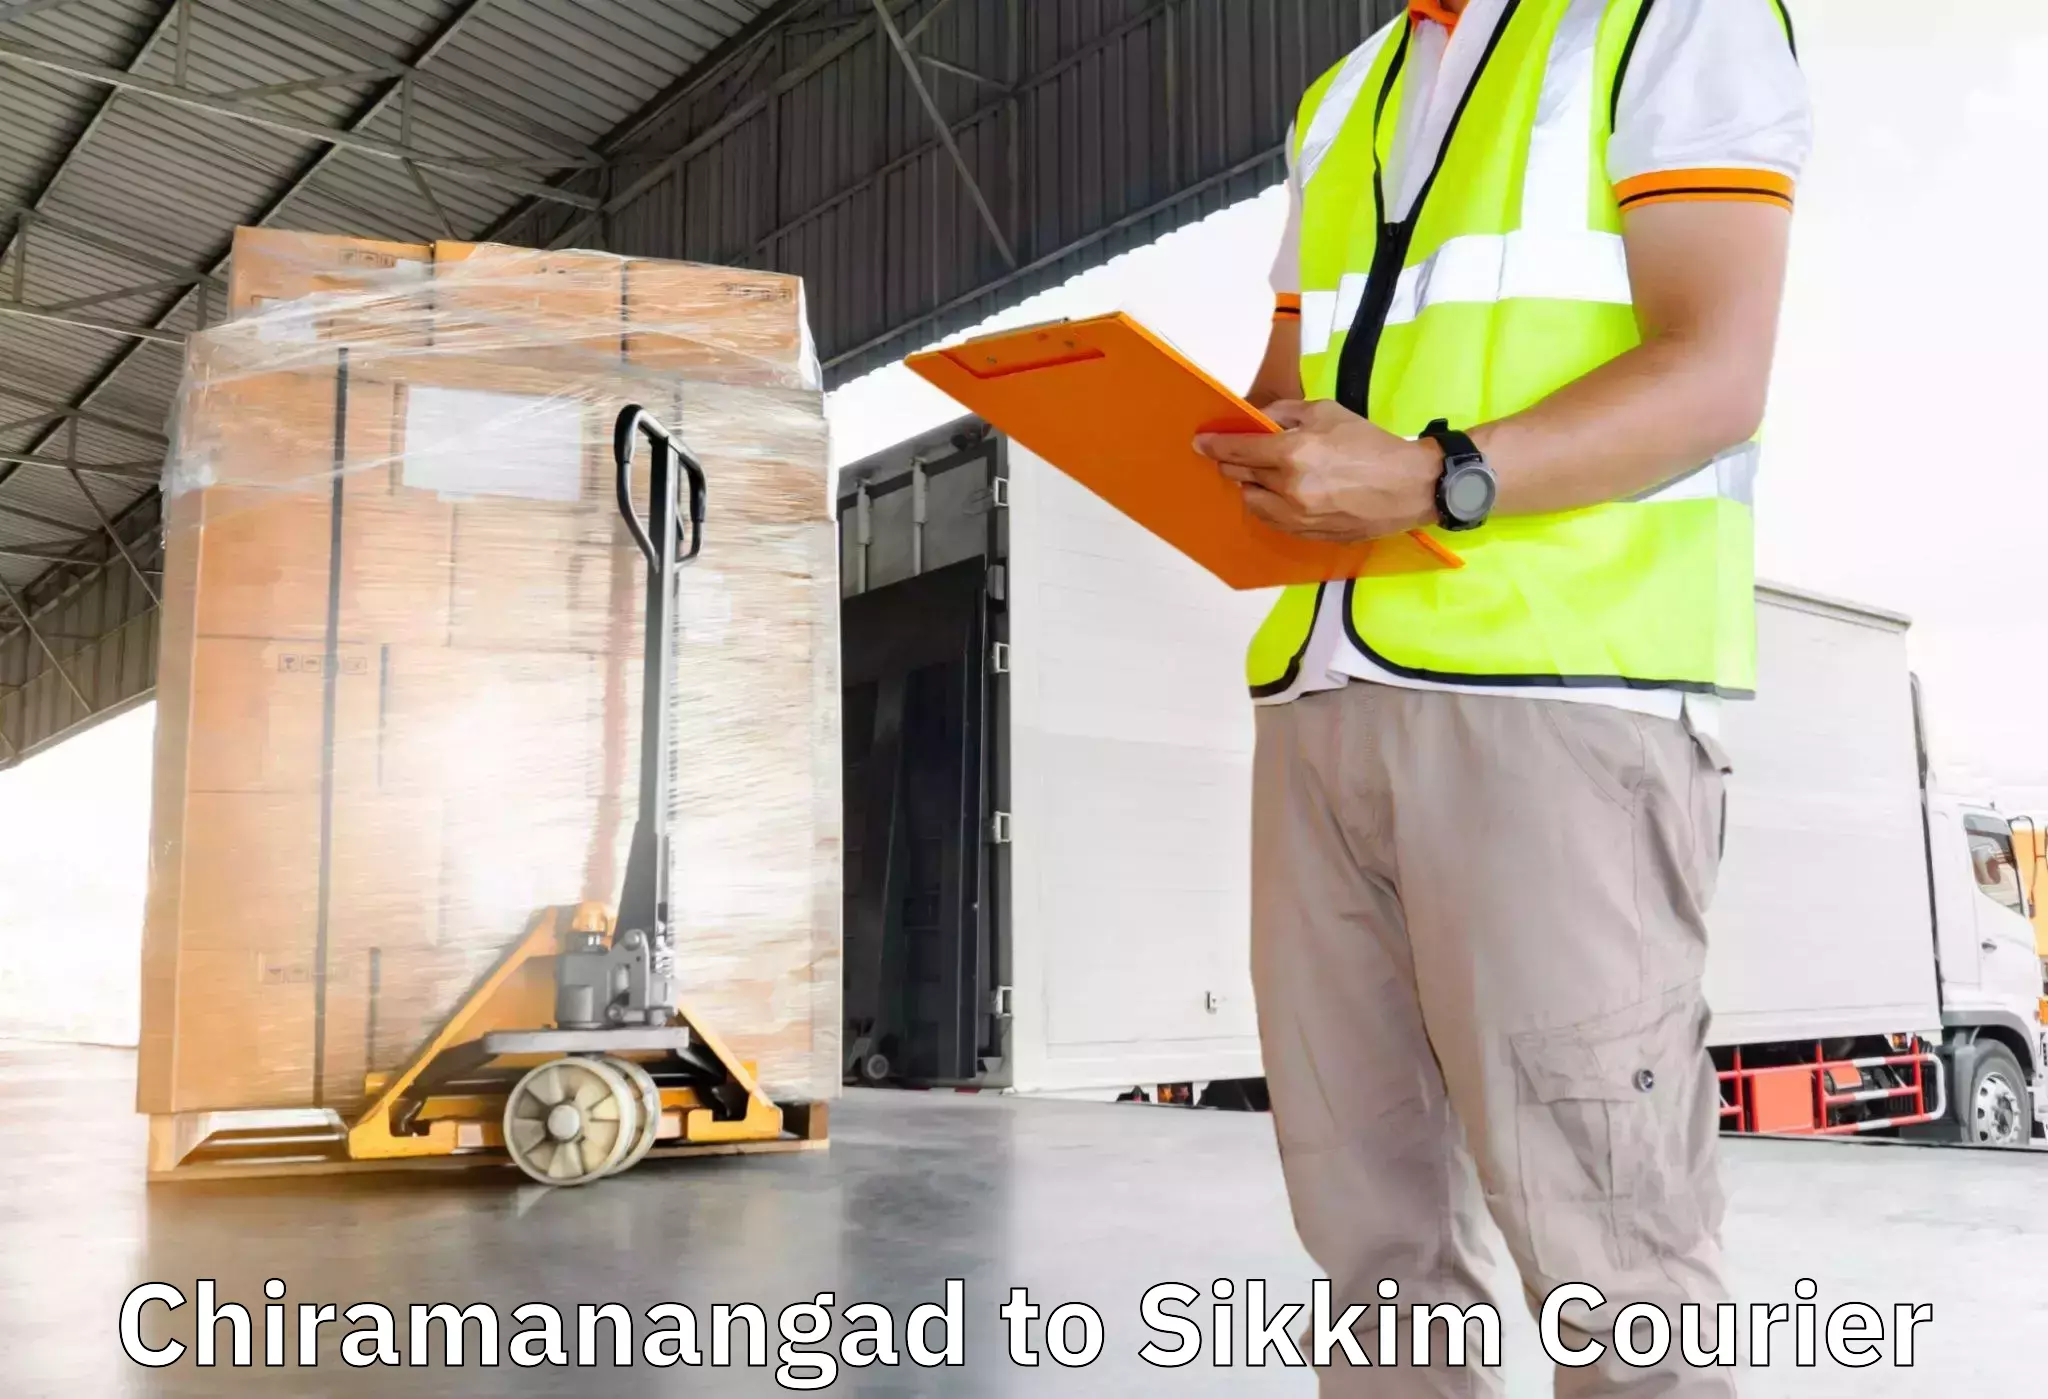 Furniture transport service Chiramanangad to Mangan